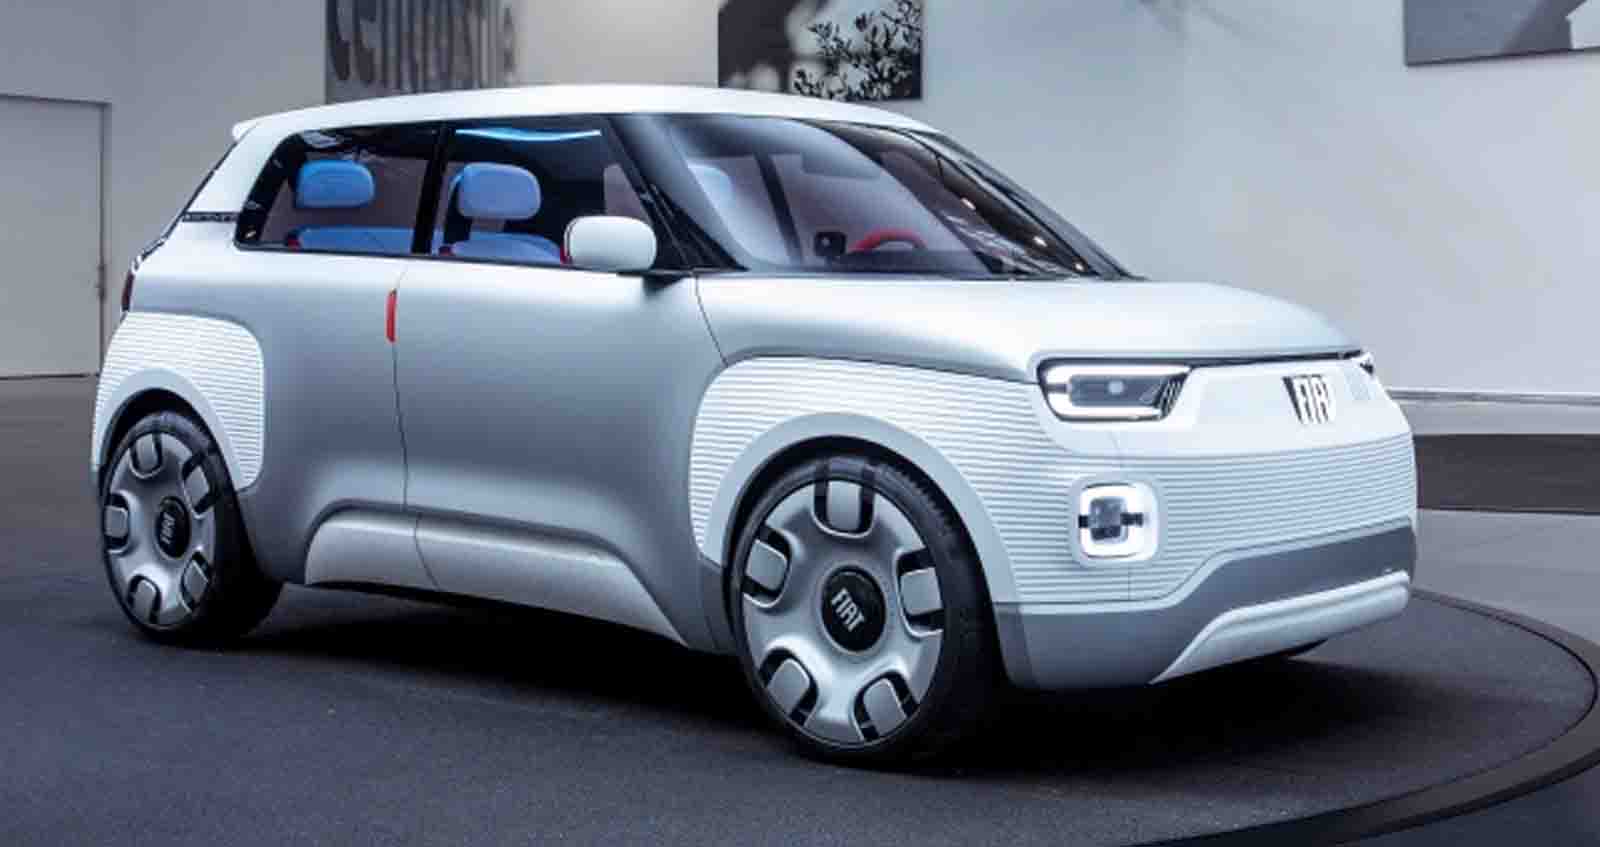 Fiat จะสร้าง ซูเปอร์มินิขนาดเล็ก ไฟฟ้าขนาดเล็ก ภายในปี 2566